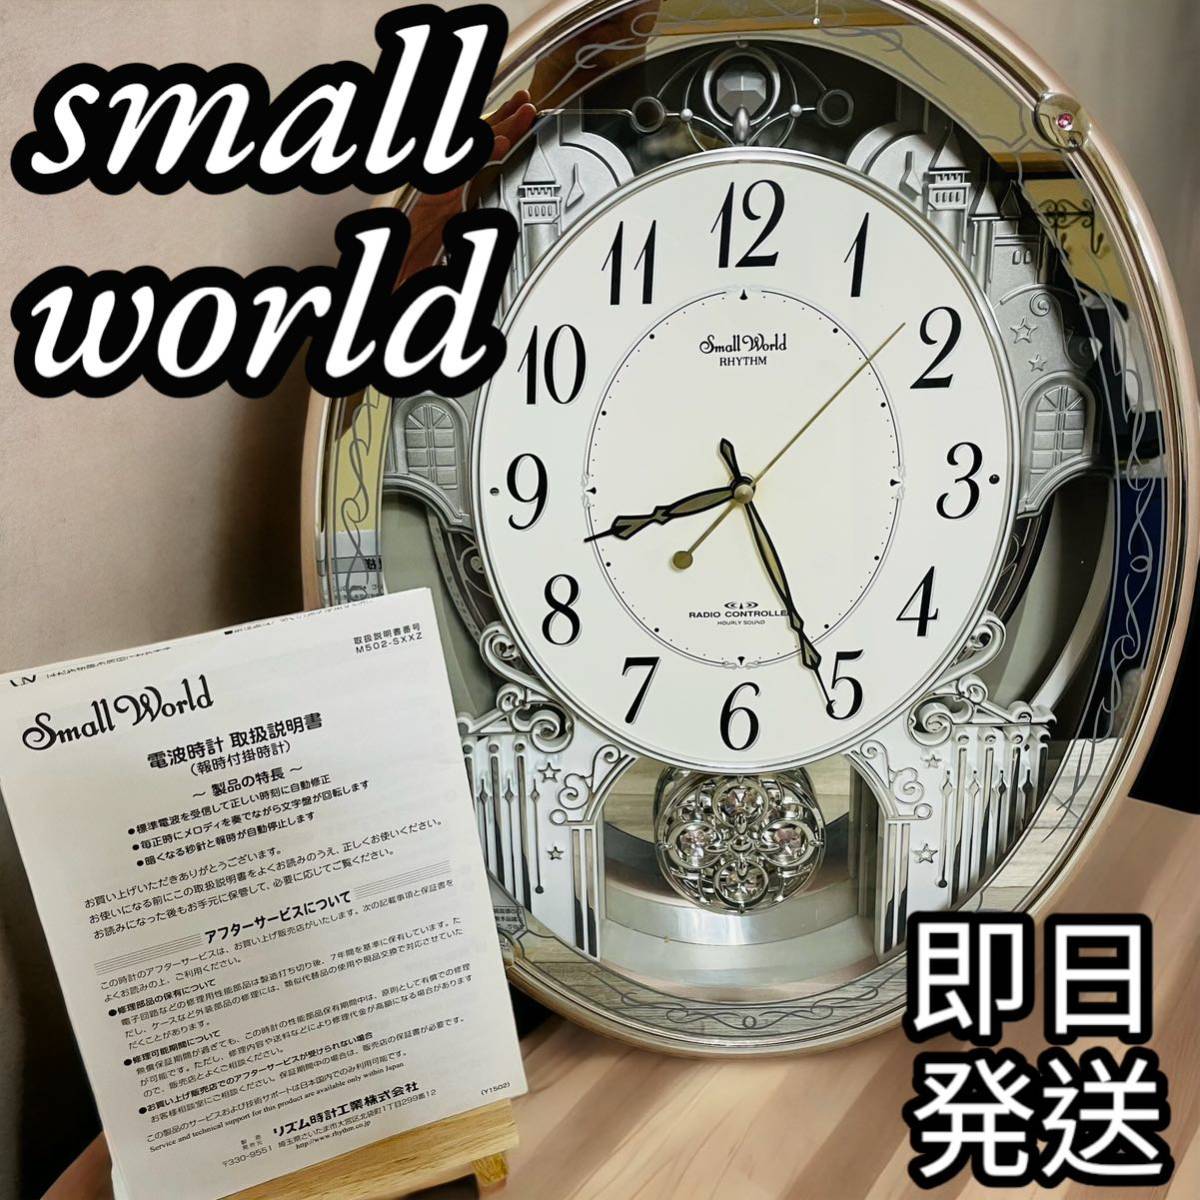 ◇美品◇small world スモールワールド掛け時計 電波時計 リズム時計 